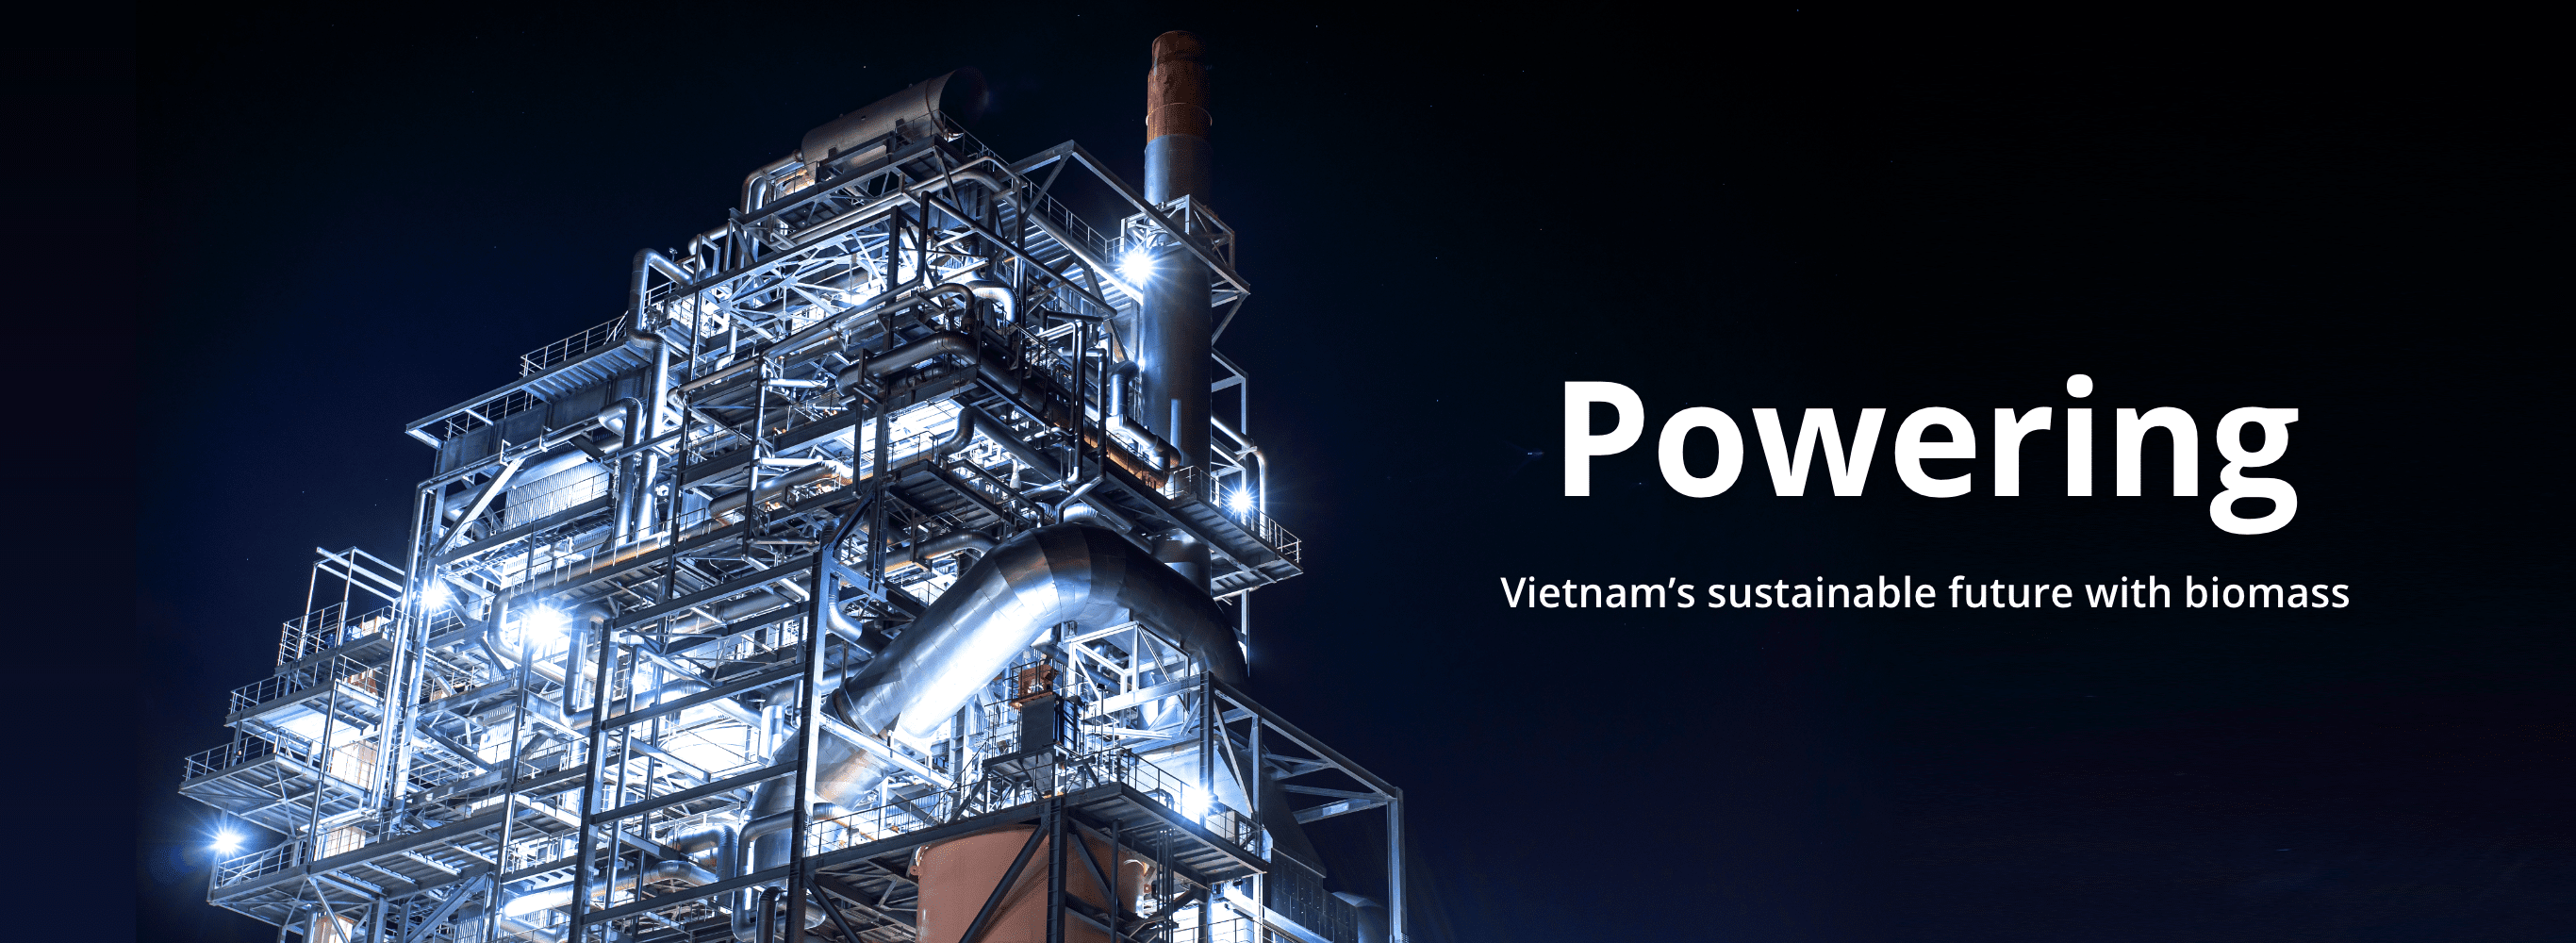 イメージ:Powering​ Vietnam’s sustainable future with biomass